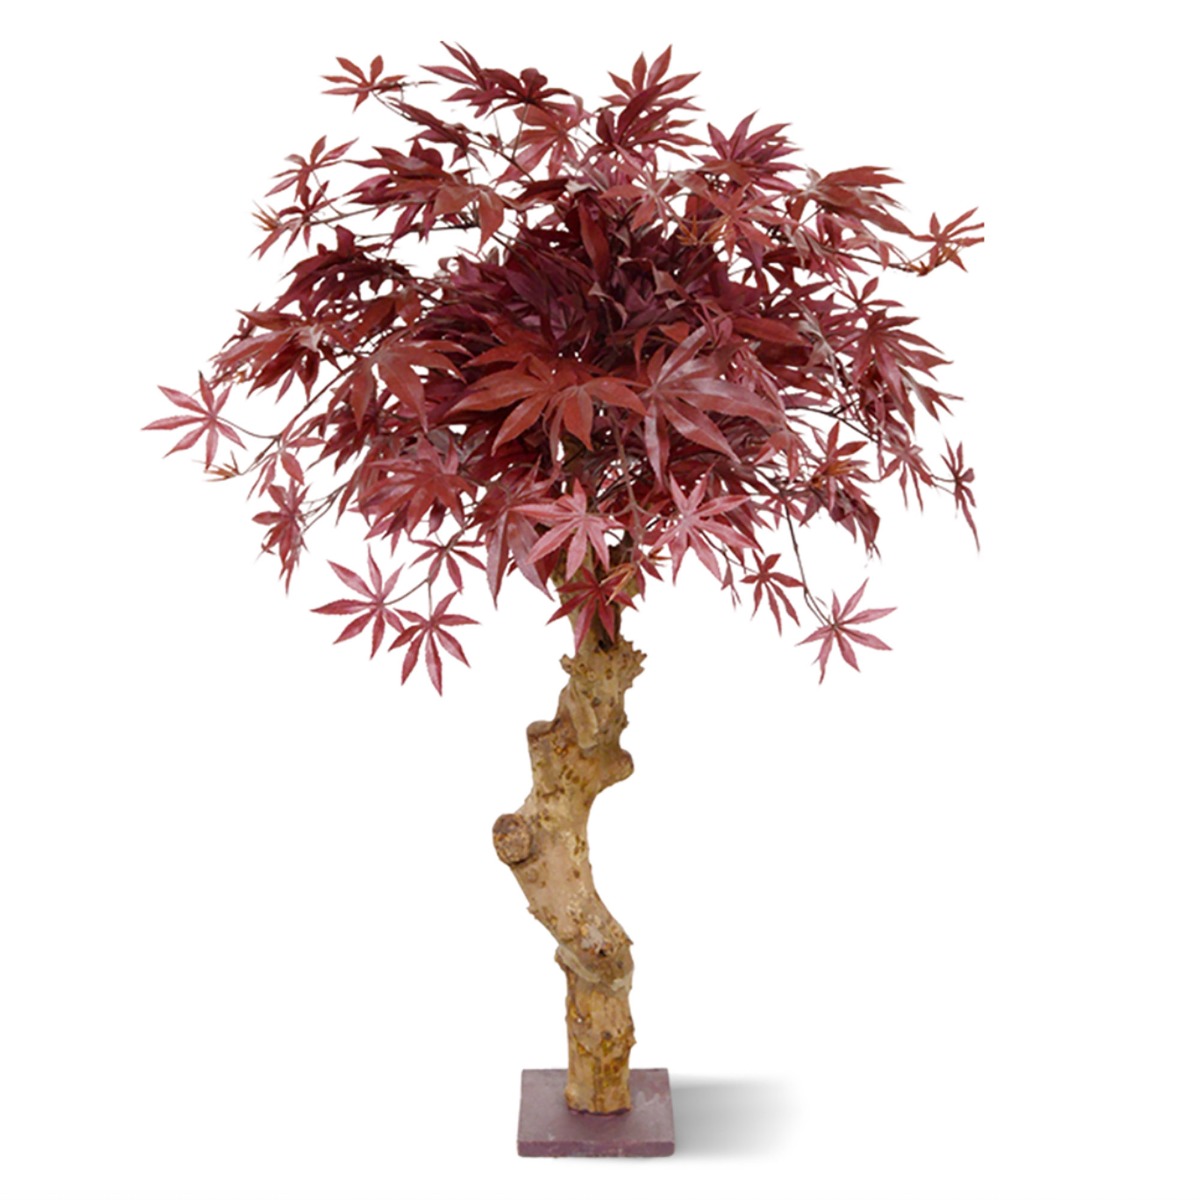 Ahorn Kunstbaum Deluxe mit Echtholzstamm 85 cm burgunderrot unter Grüne Kunstpflanzen